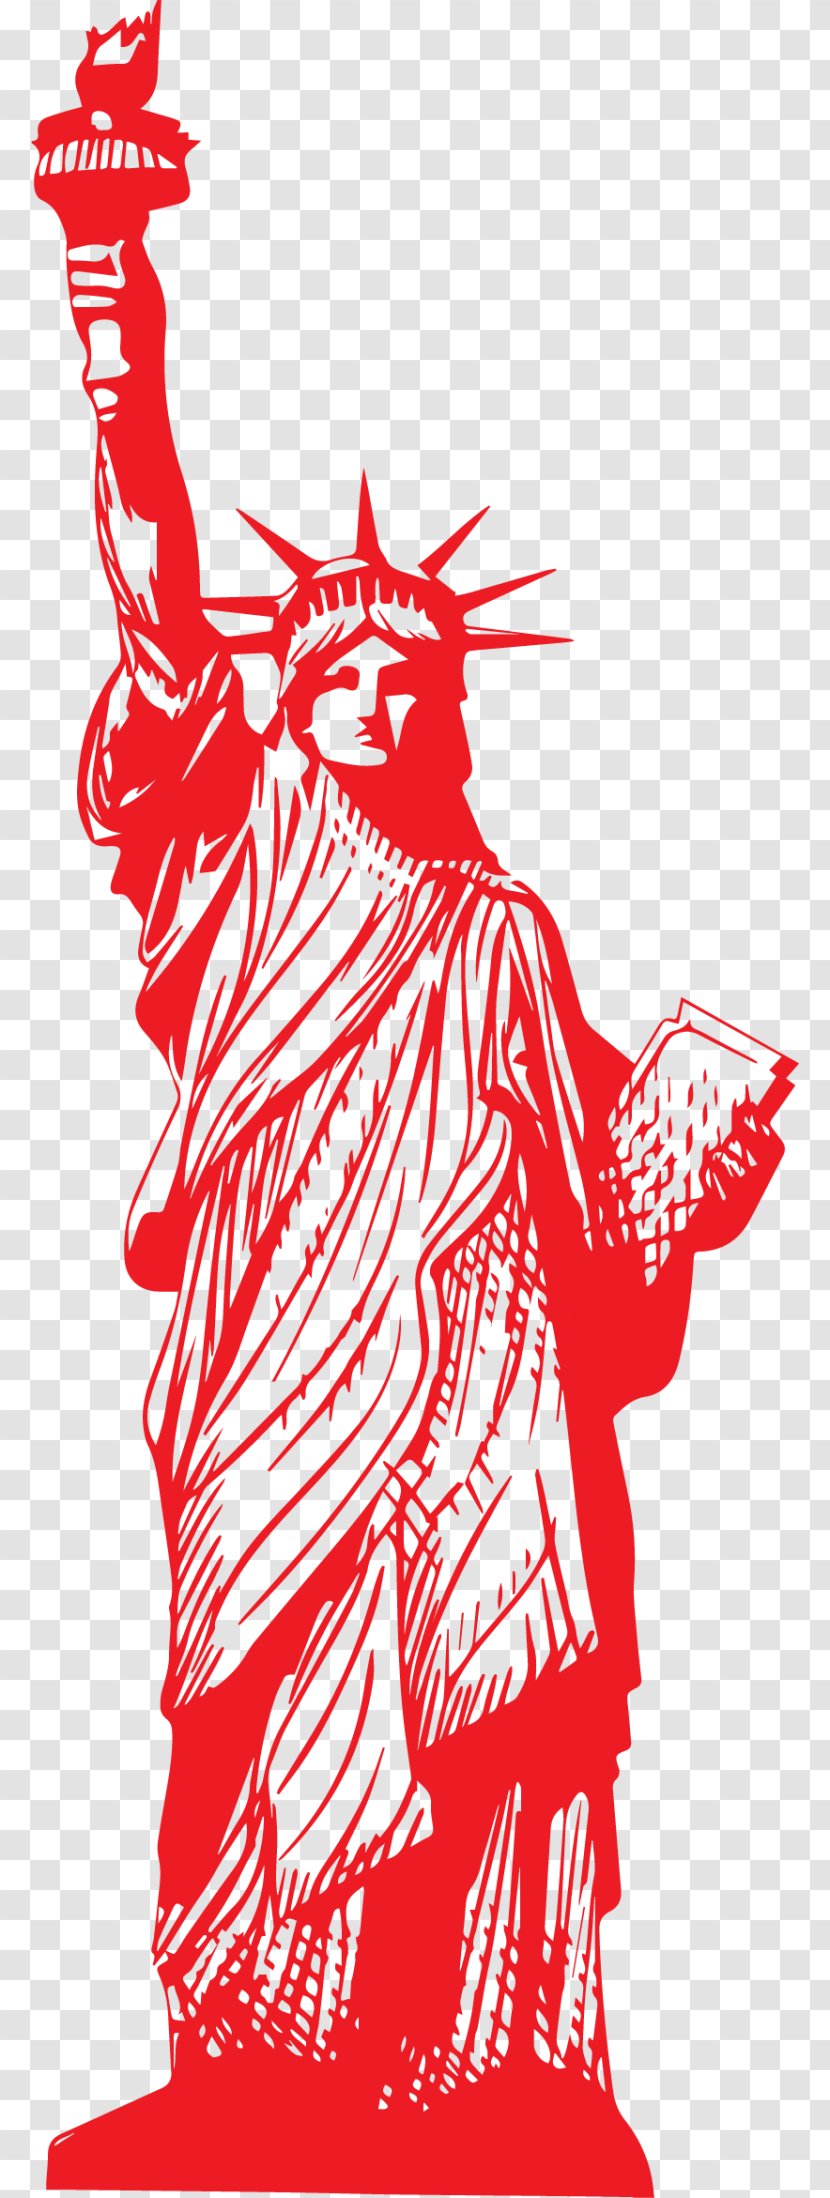 Brooklyn Bridge Vecteur Resource - Statue Of Liberty Transparent PNG